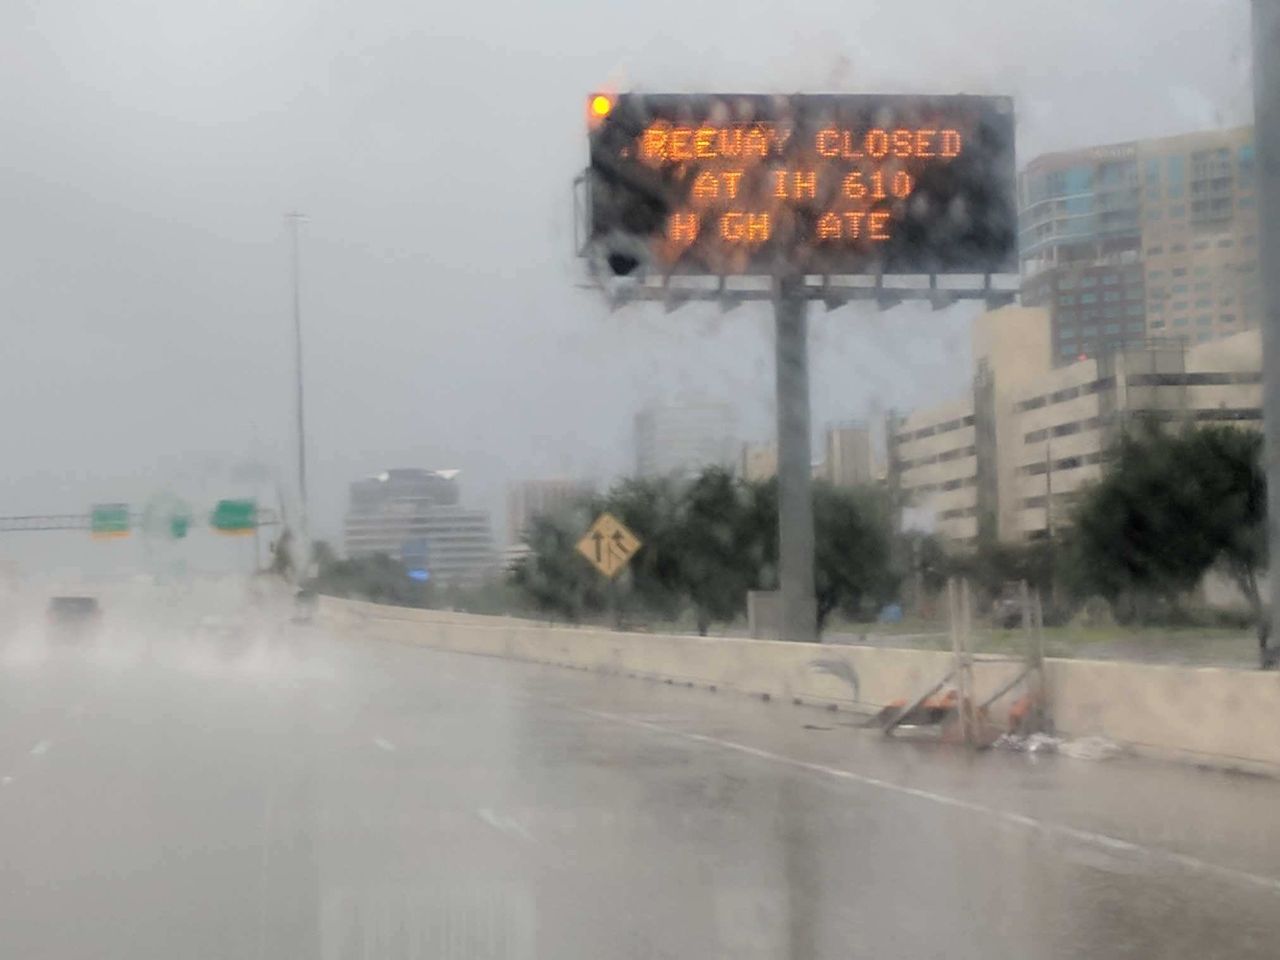 More flooding outside of Houston.